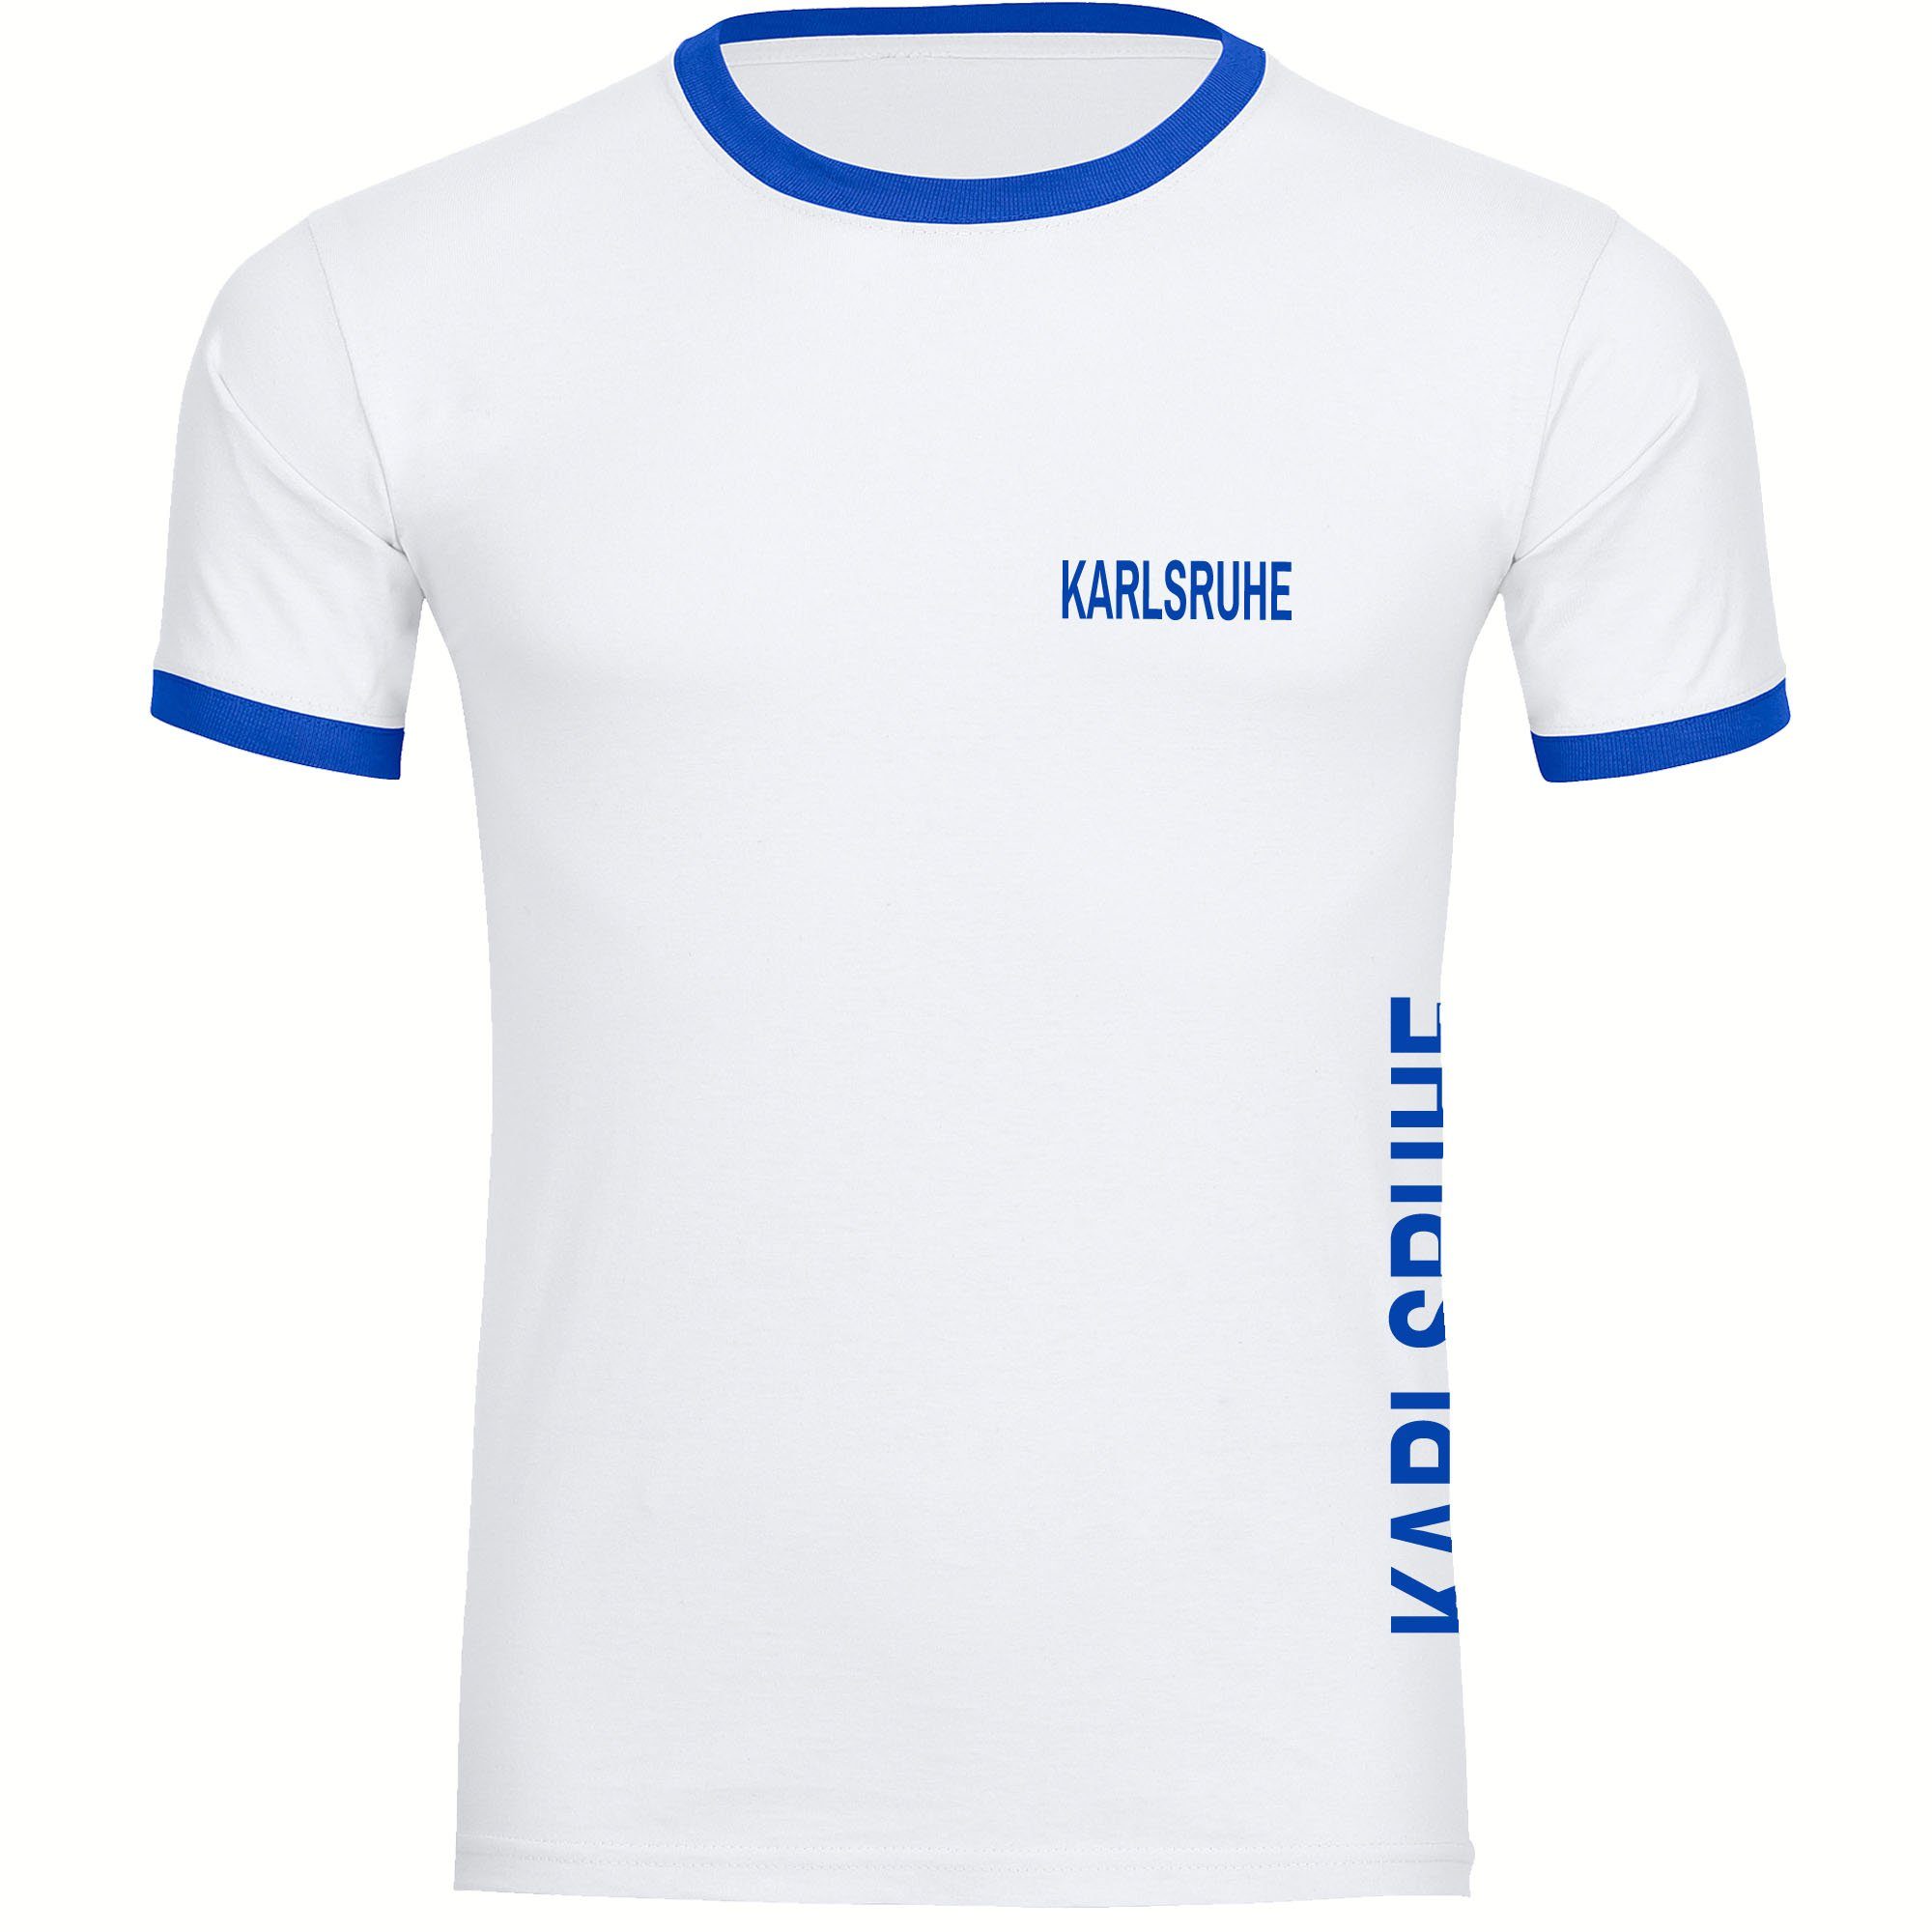 multifanshop T-Shirt Kontrast Herren Karlsruhe - Brust & Seite - Shirt  Fanartikel